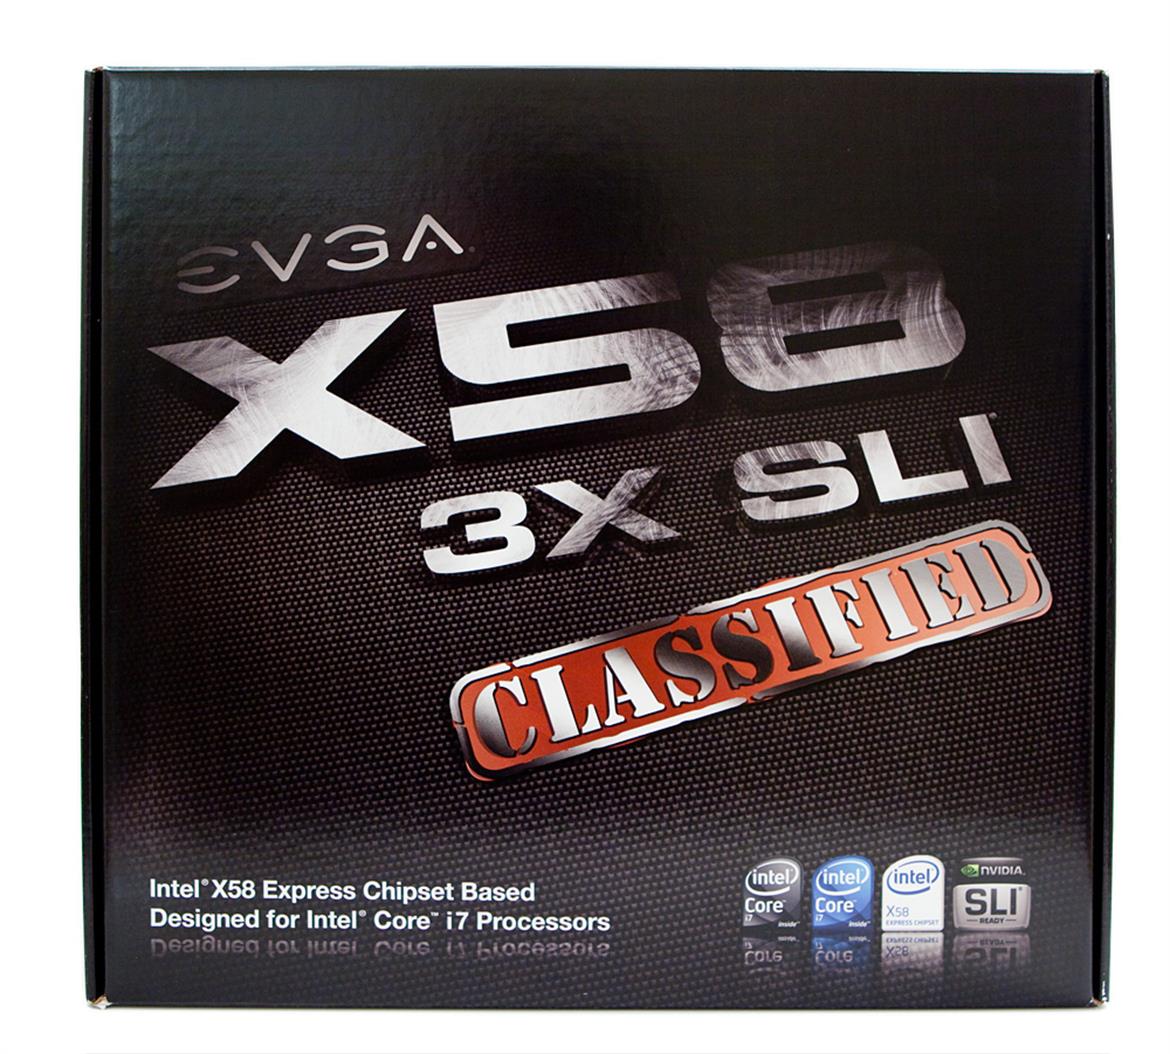 EVGA X58 3X SLI Classified Motherboard